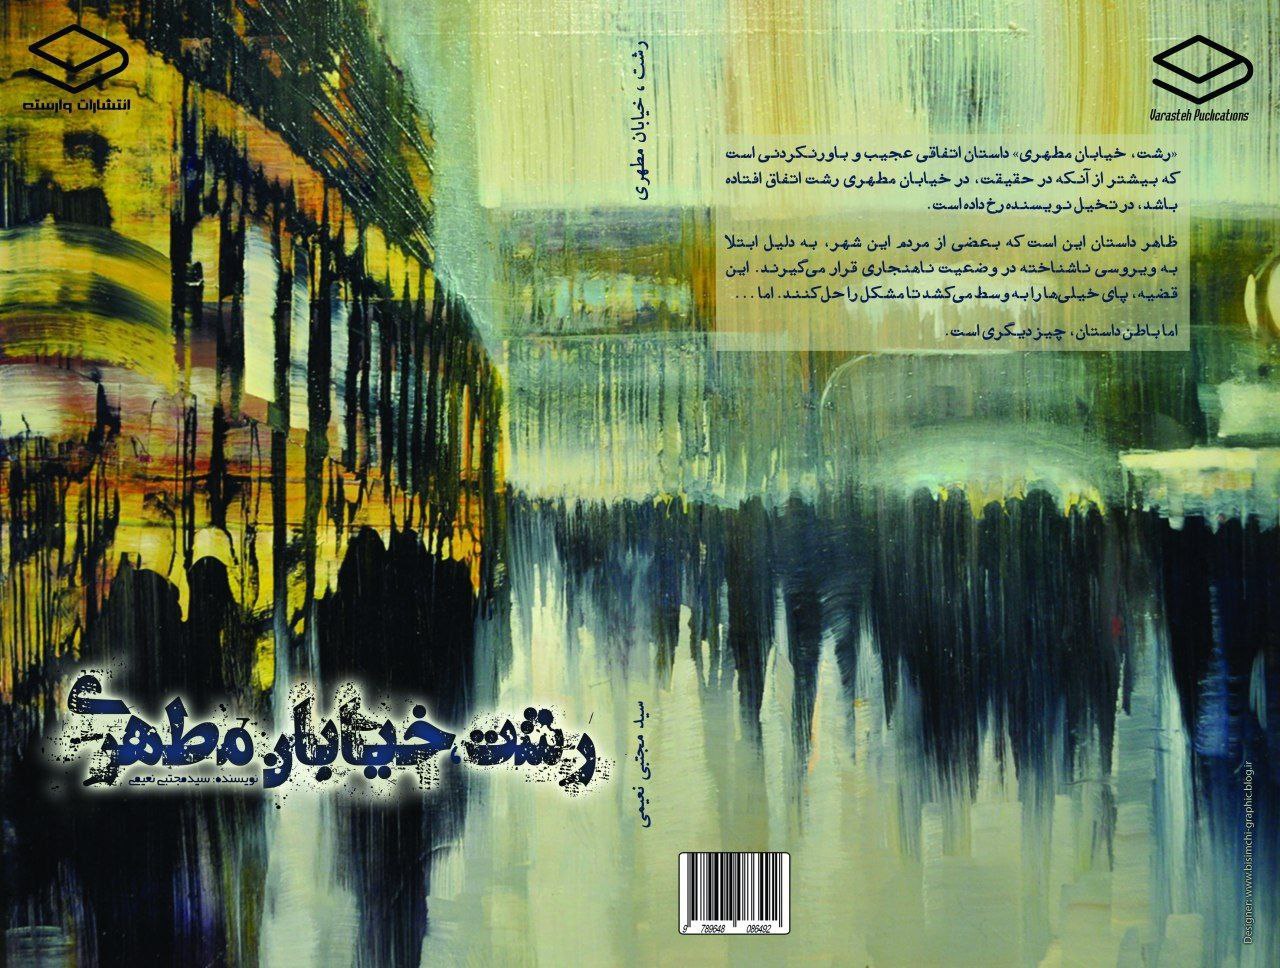 “رشت، خیابان مطهری” اولین داستان بلند نویسنده گیلانی